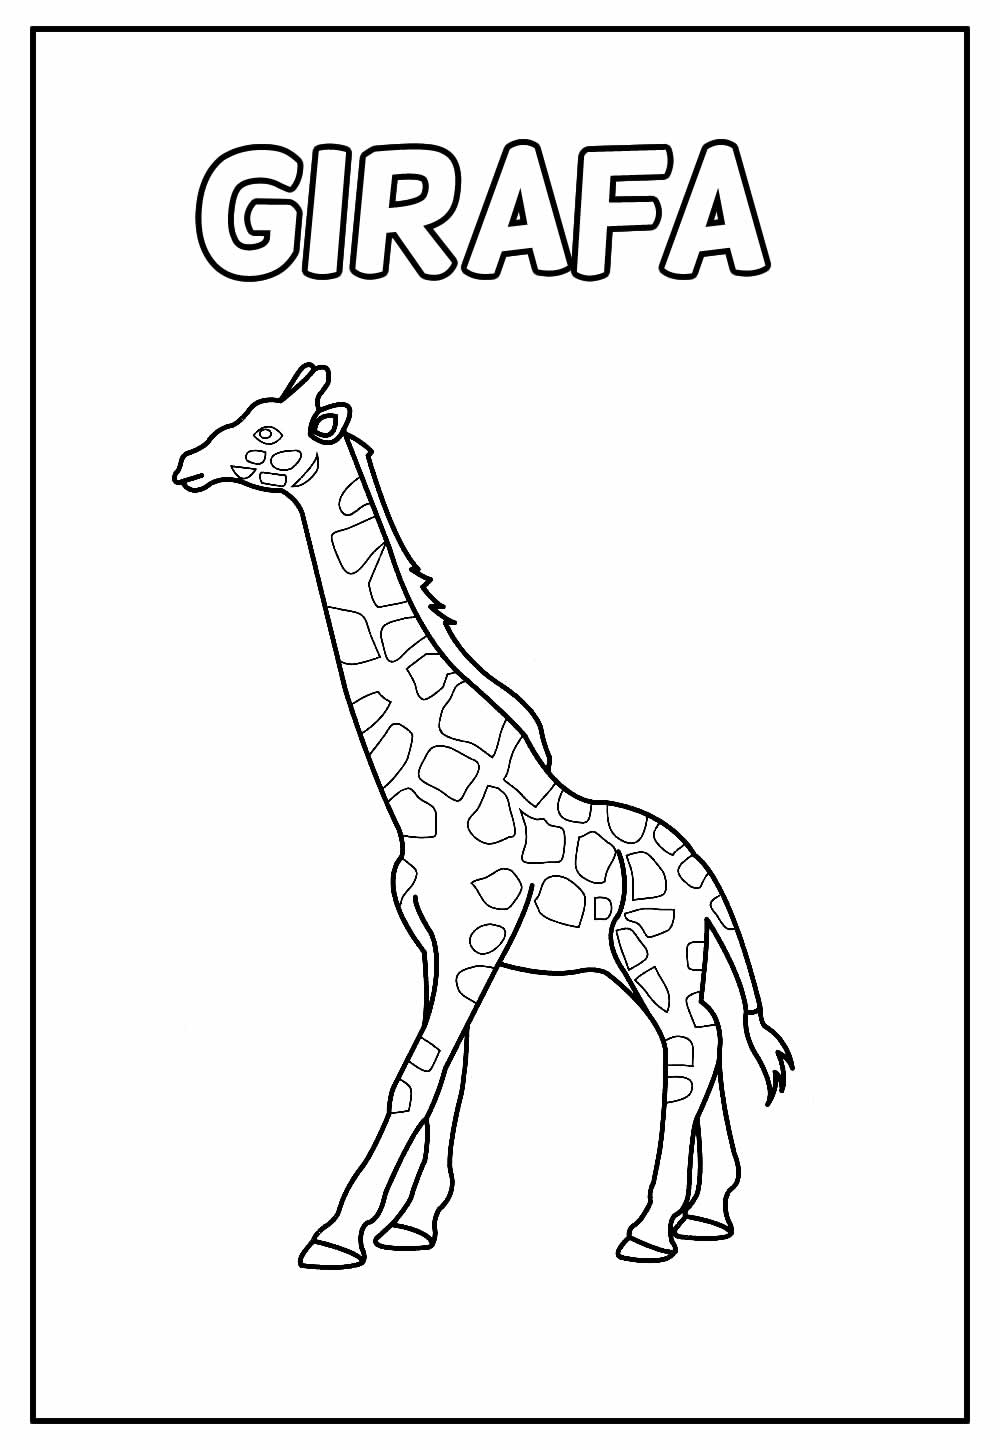 Desenho Educativo de Girafa para colorir